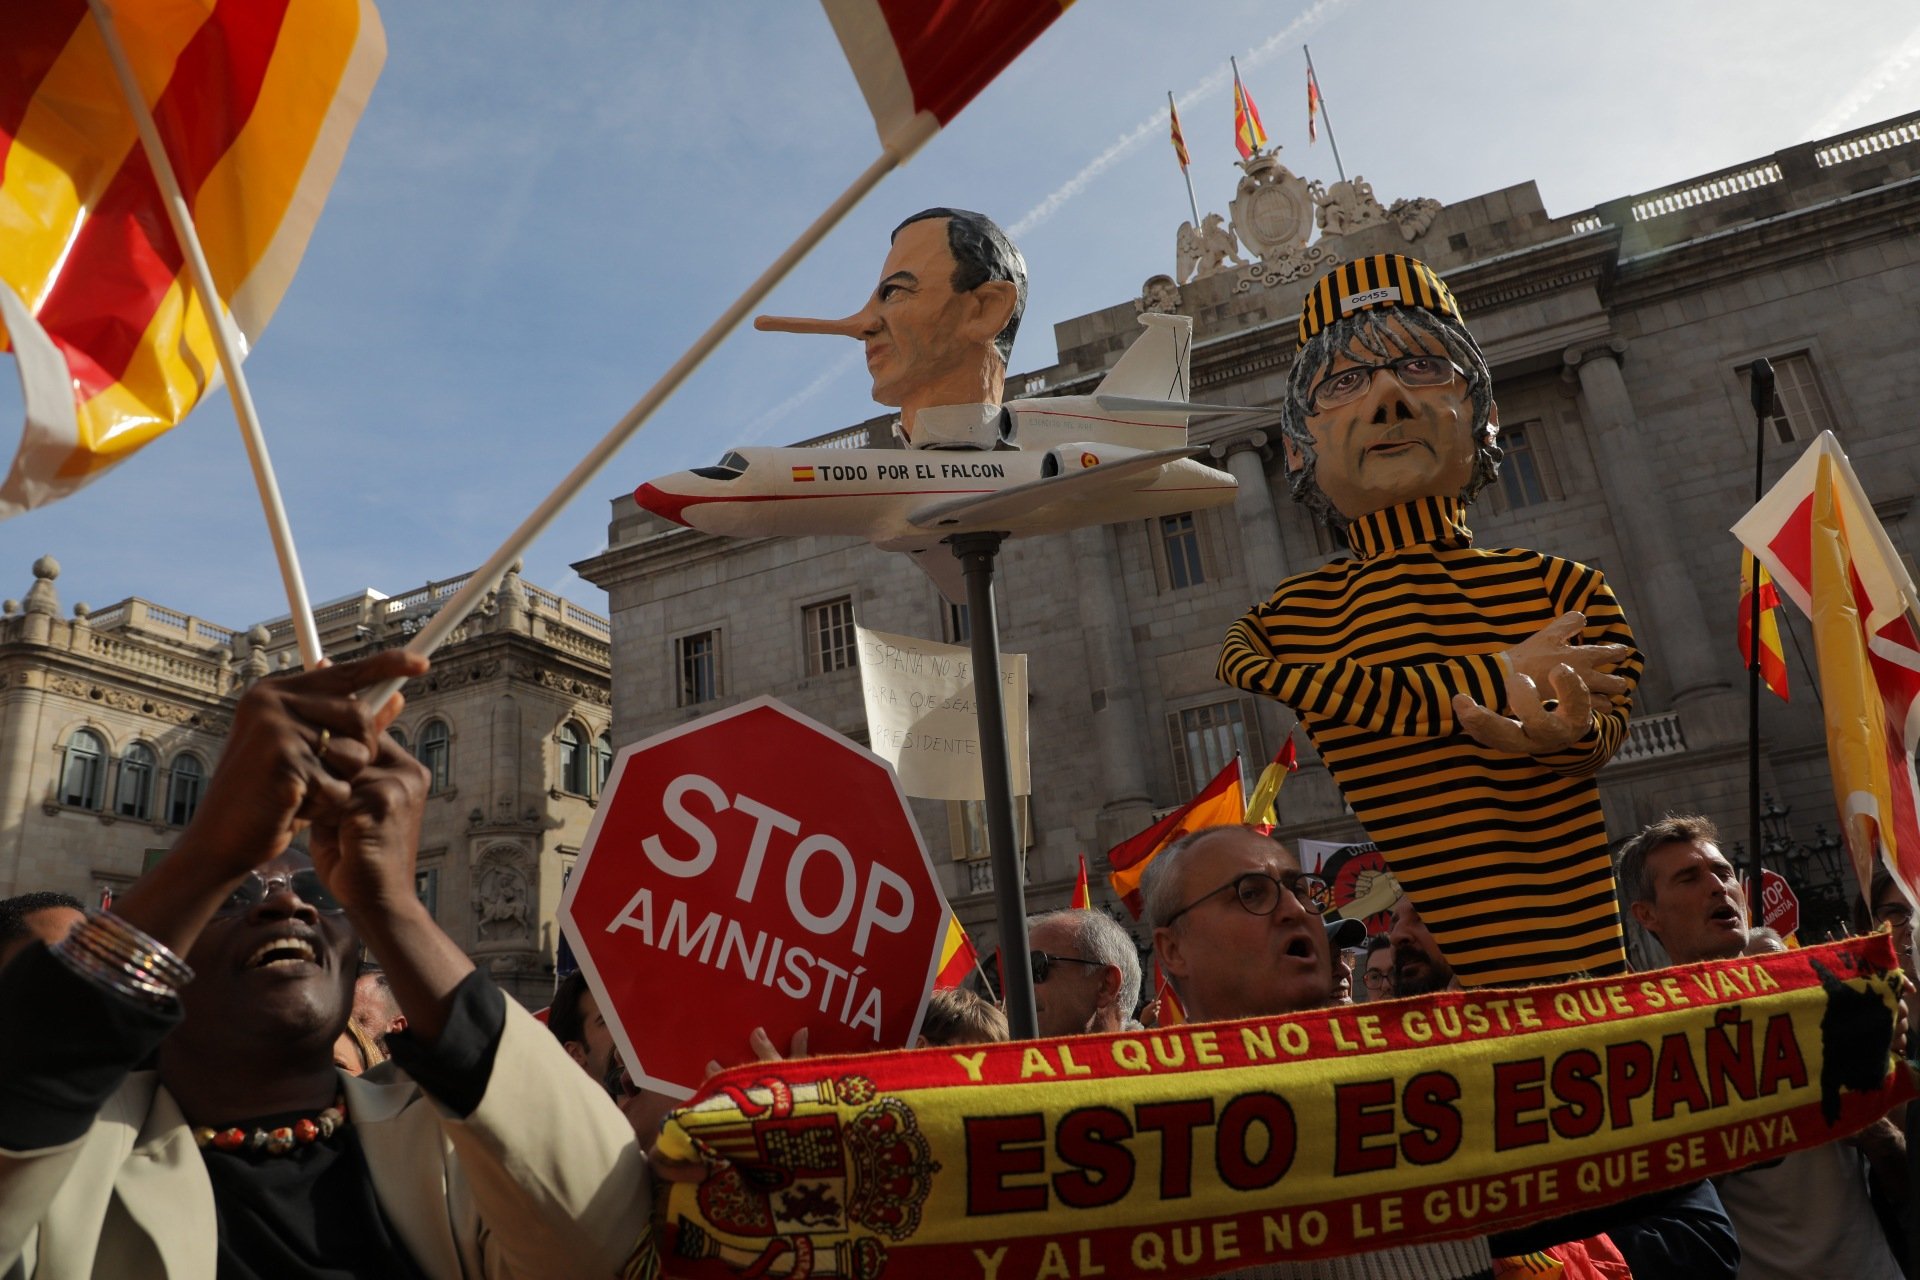 El españolismo vuelve a fracasar en Barcelona contra la amnistía y eleva el tono contra Sánchez y Puigdemont